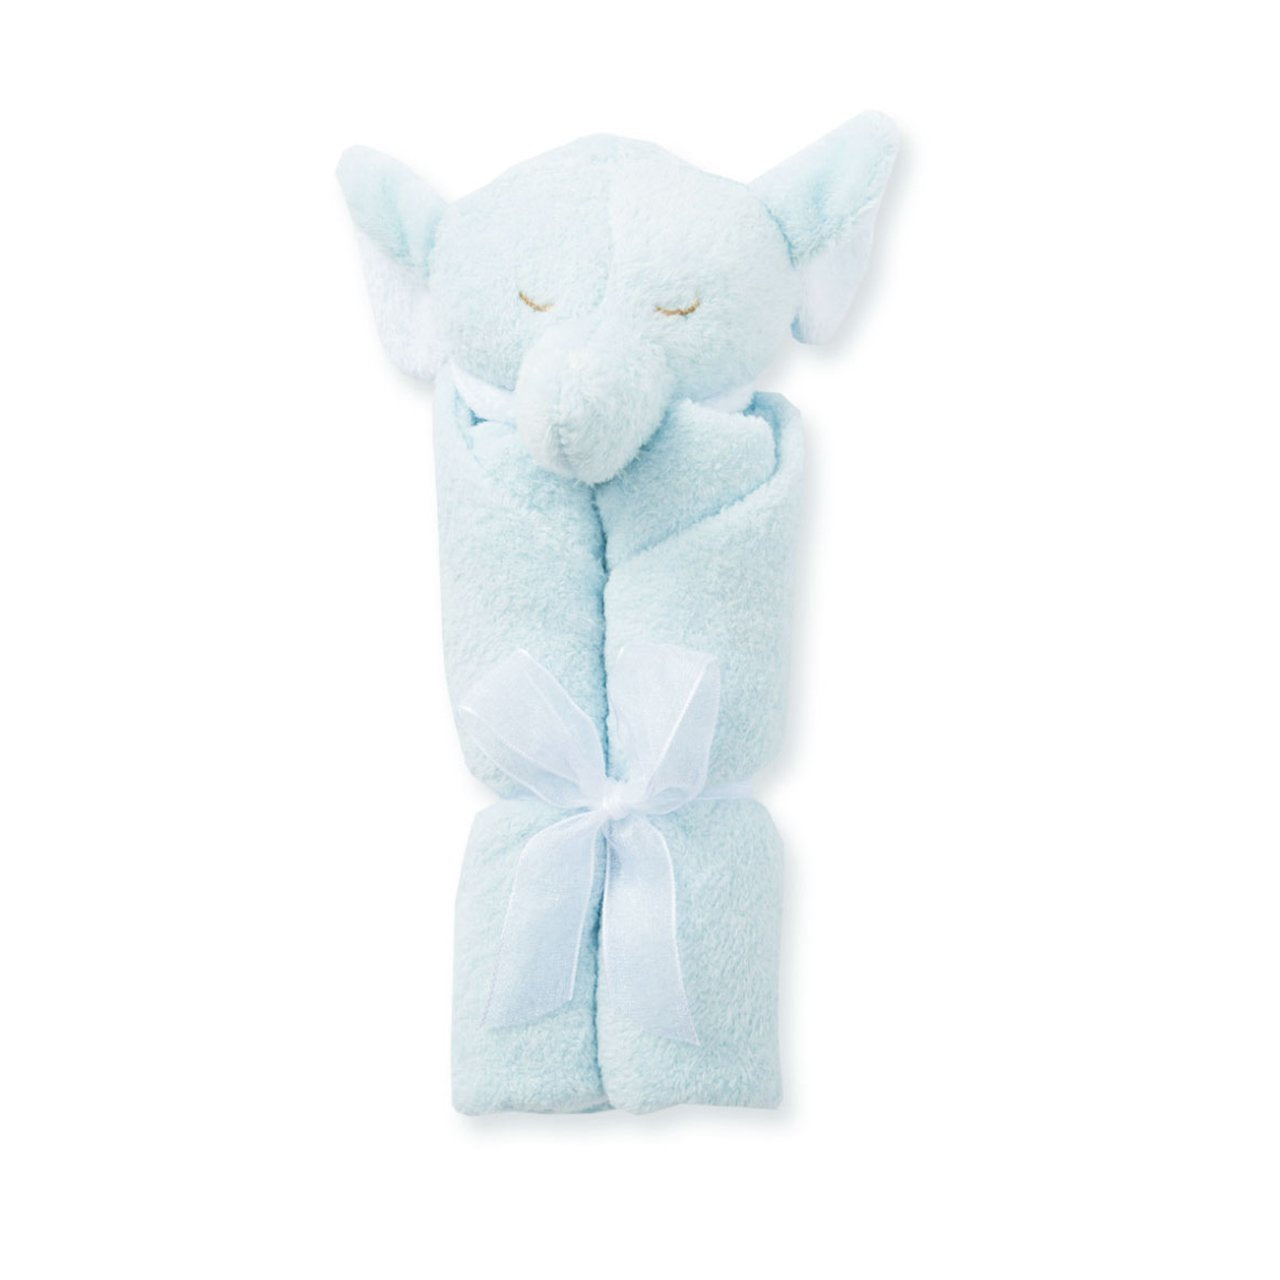 Personalized Blue Elephant Baby Lovie Blankie - Give Wink